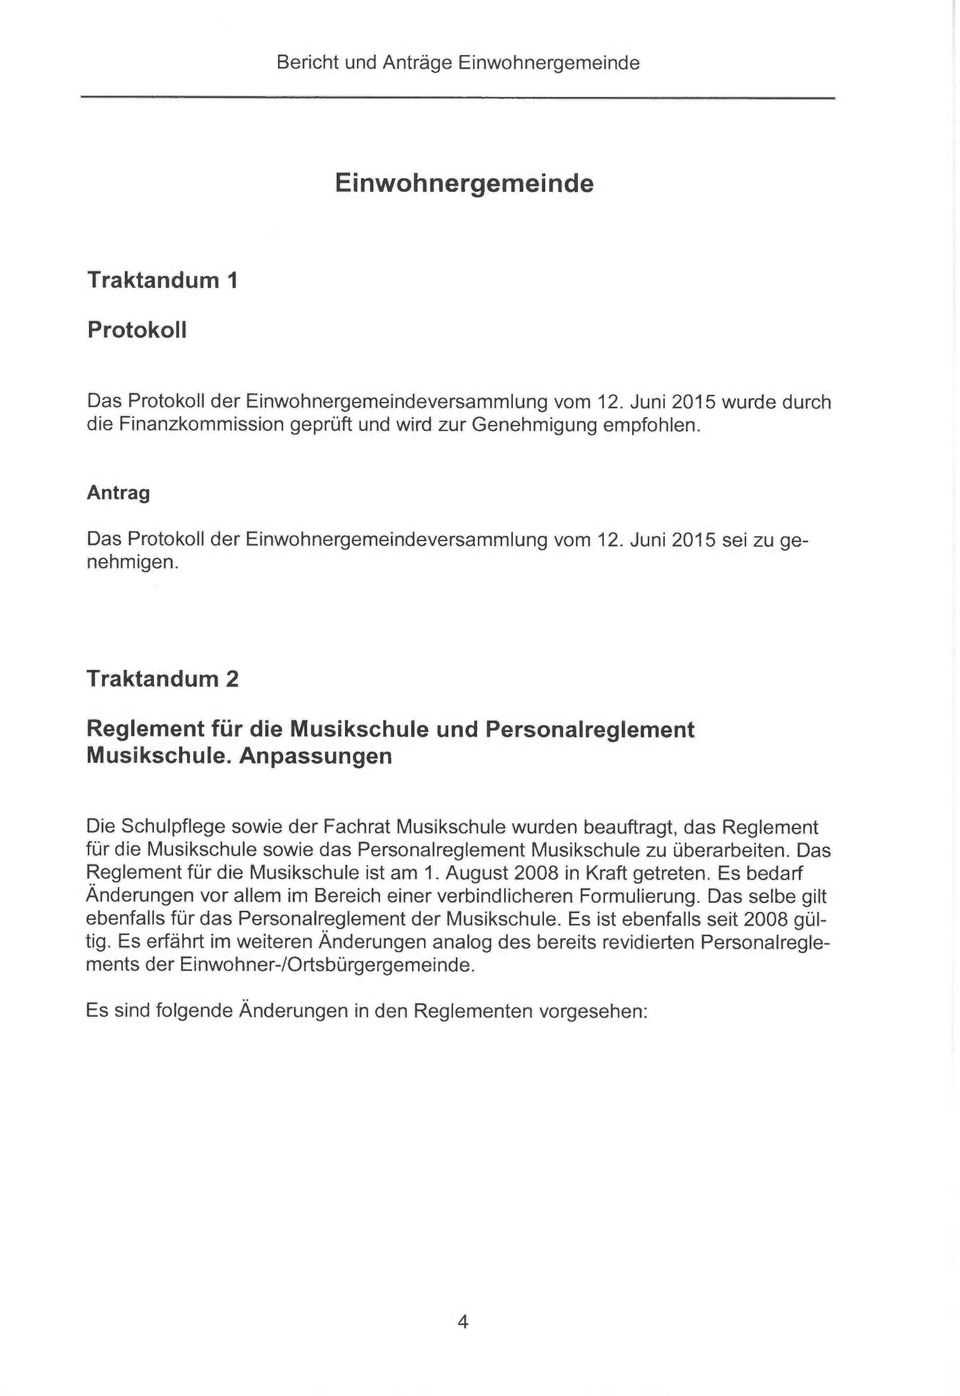 Traktandum 2 Reglement für die Musikschule und Personalreglement Musikschule.